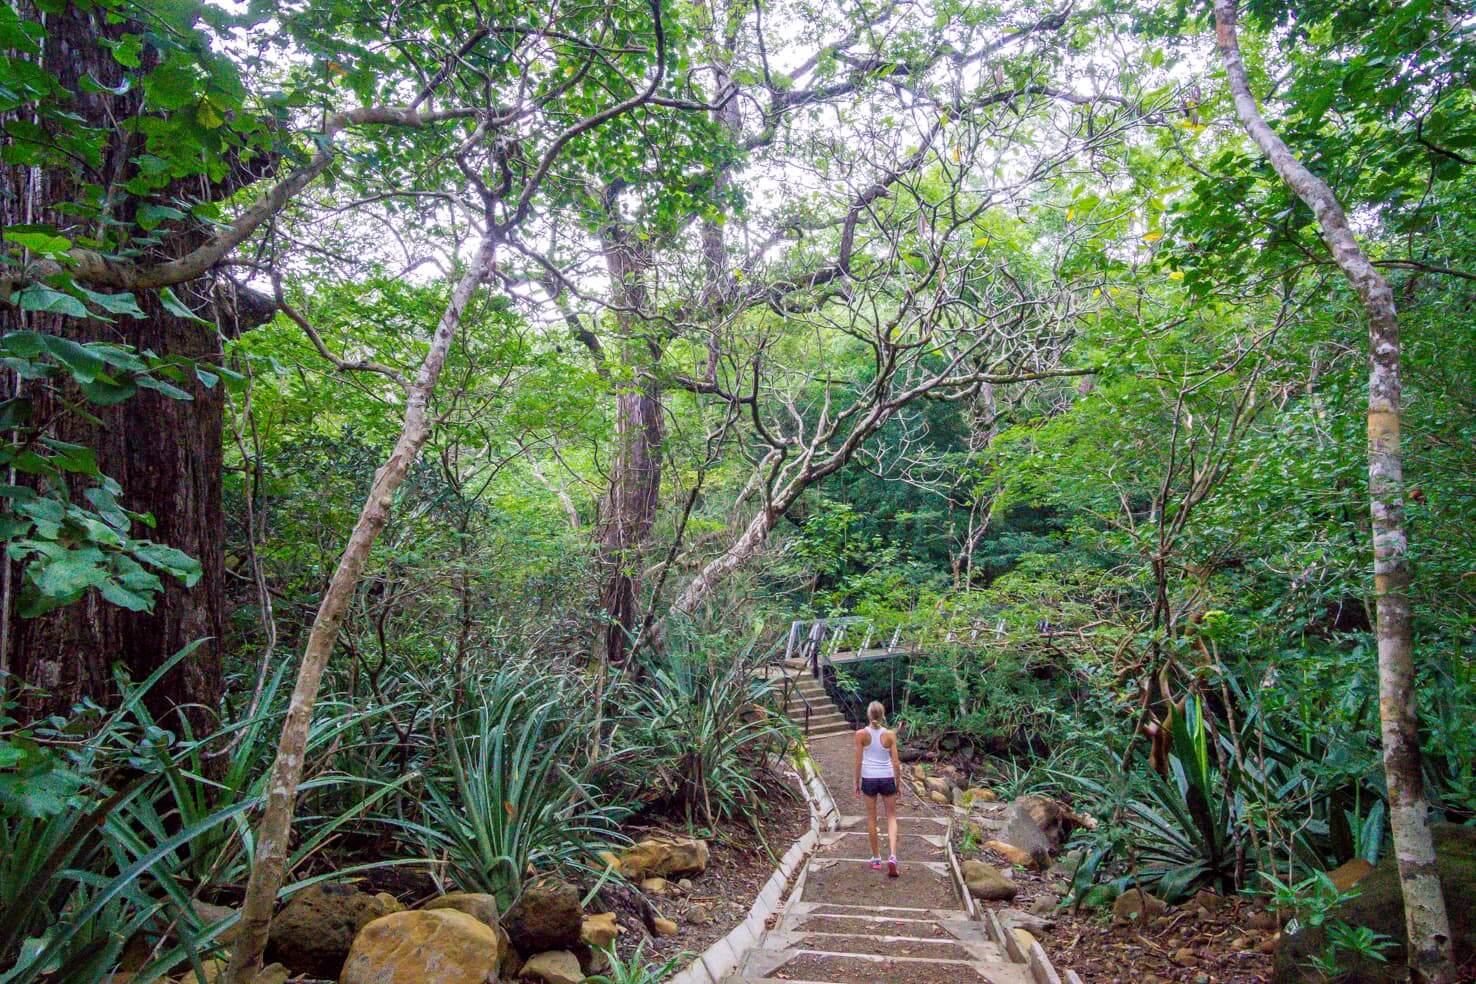 10 days in Costa Rica - Rincon de la Vieja National Park